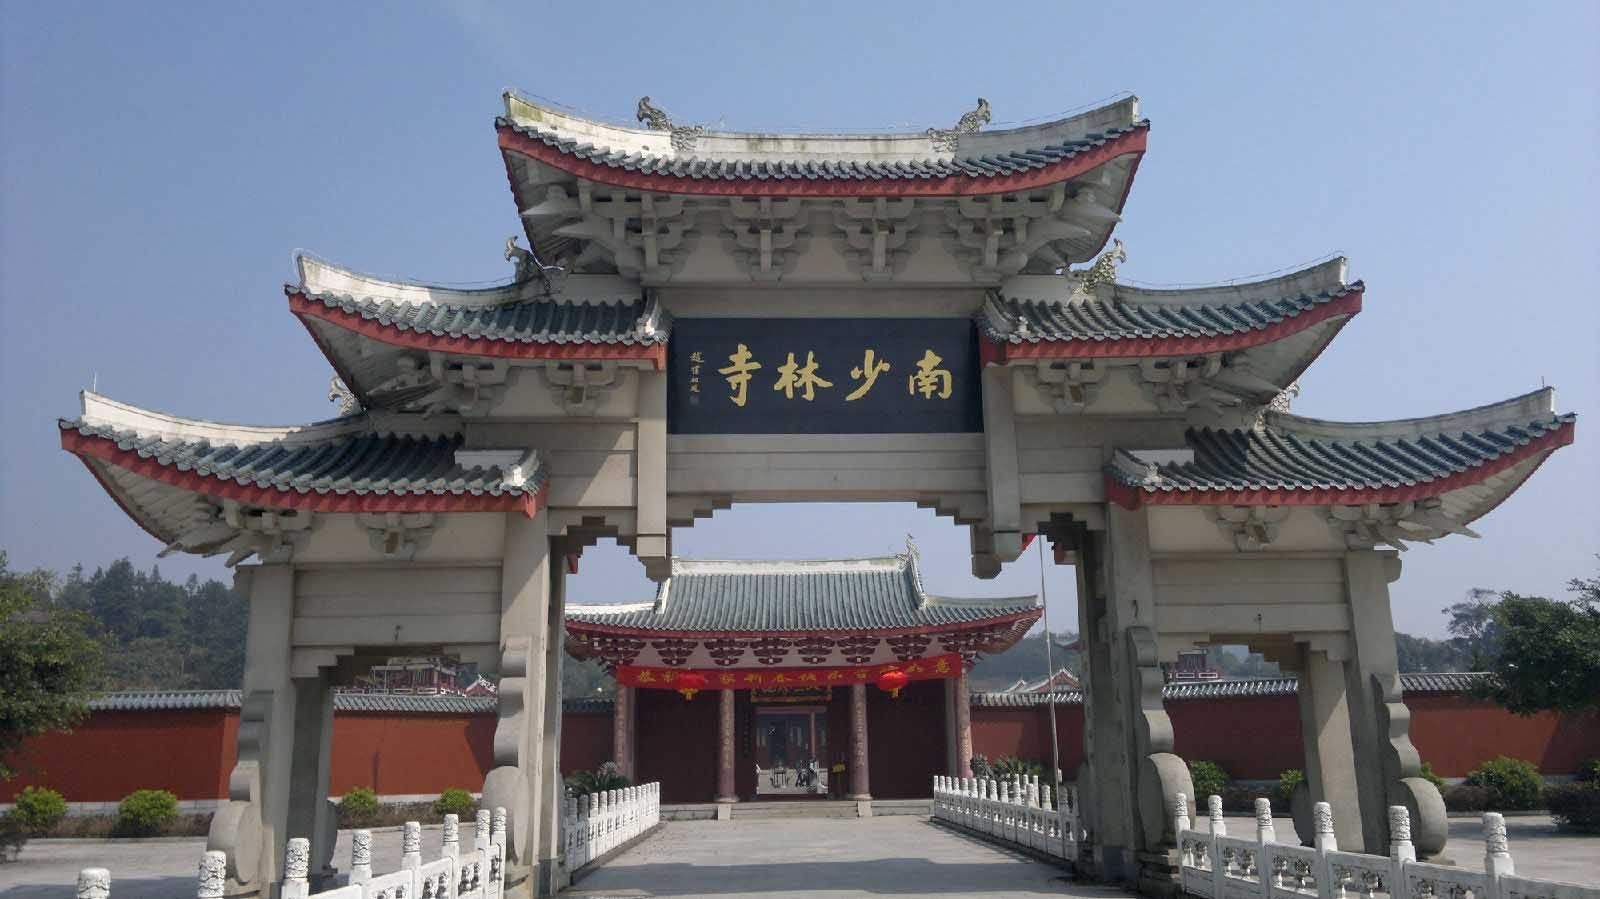 Southern Shaolin Monastery